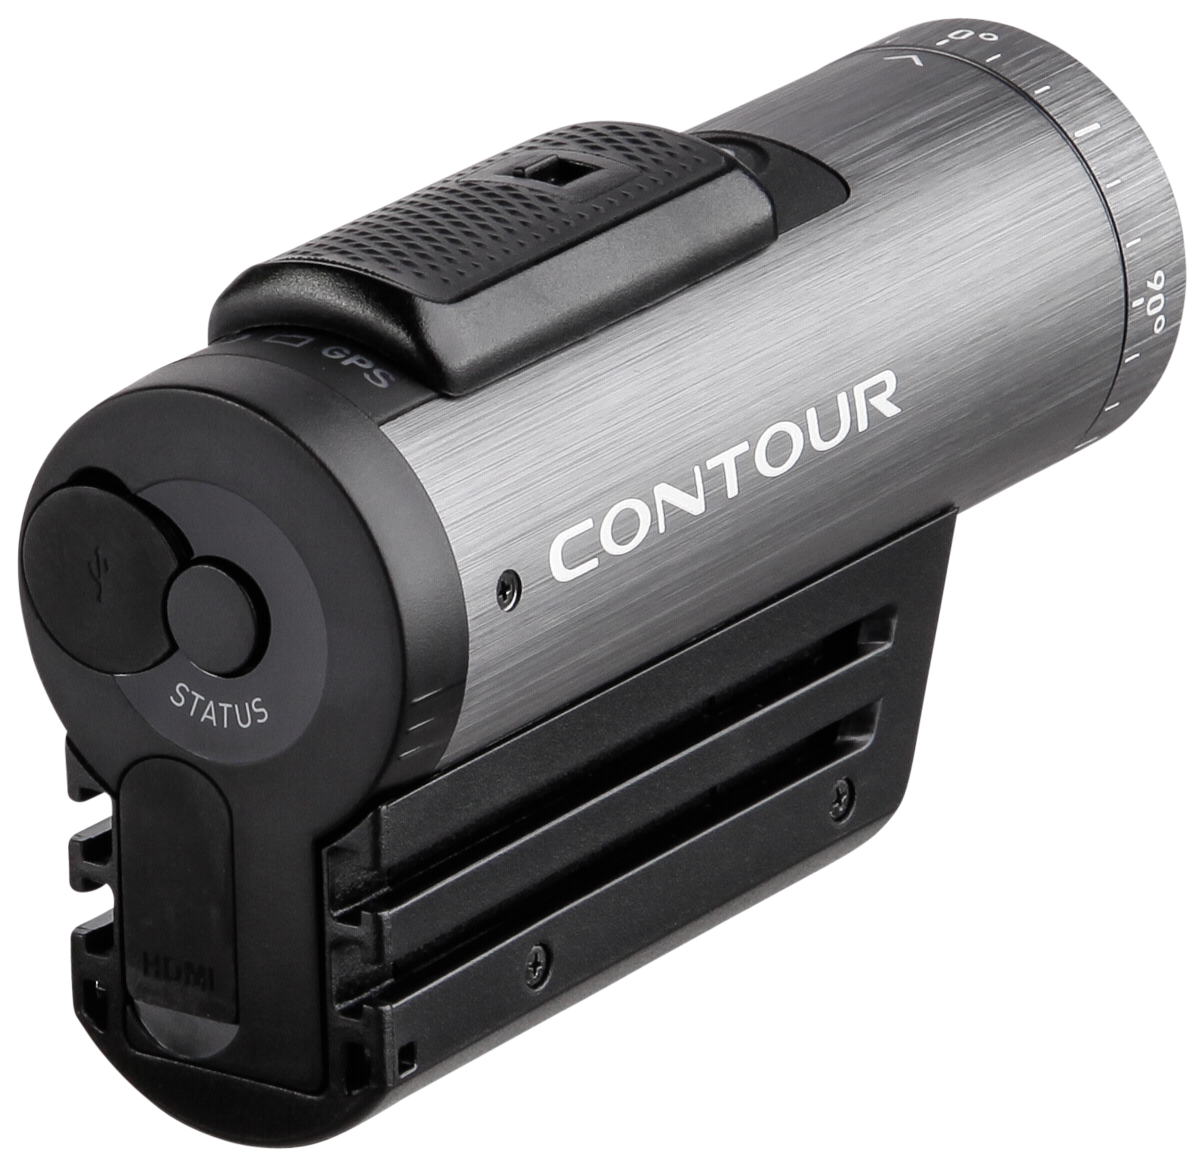 Contour+2 - outdoorová kamera s GPS a bluetooth (1709) | AB-COM.cz